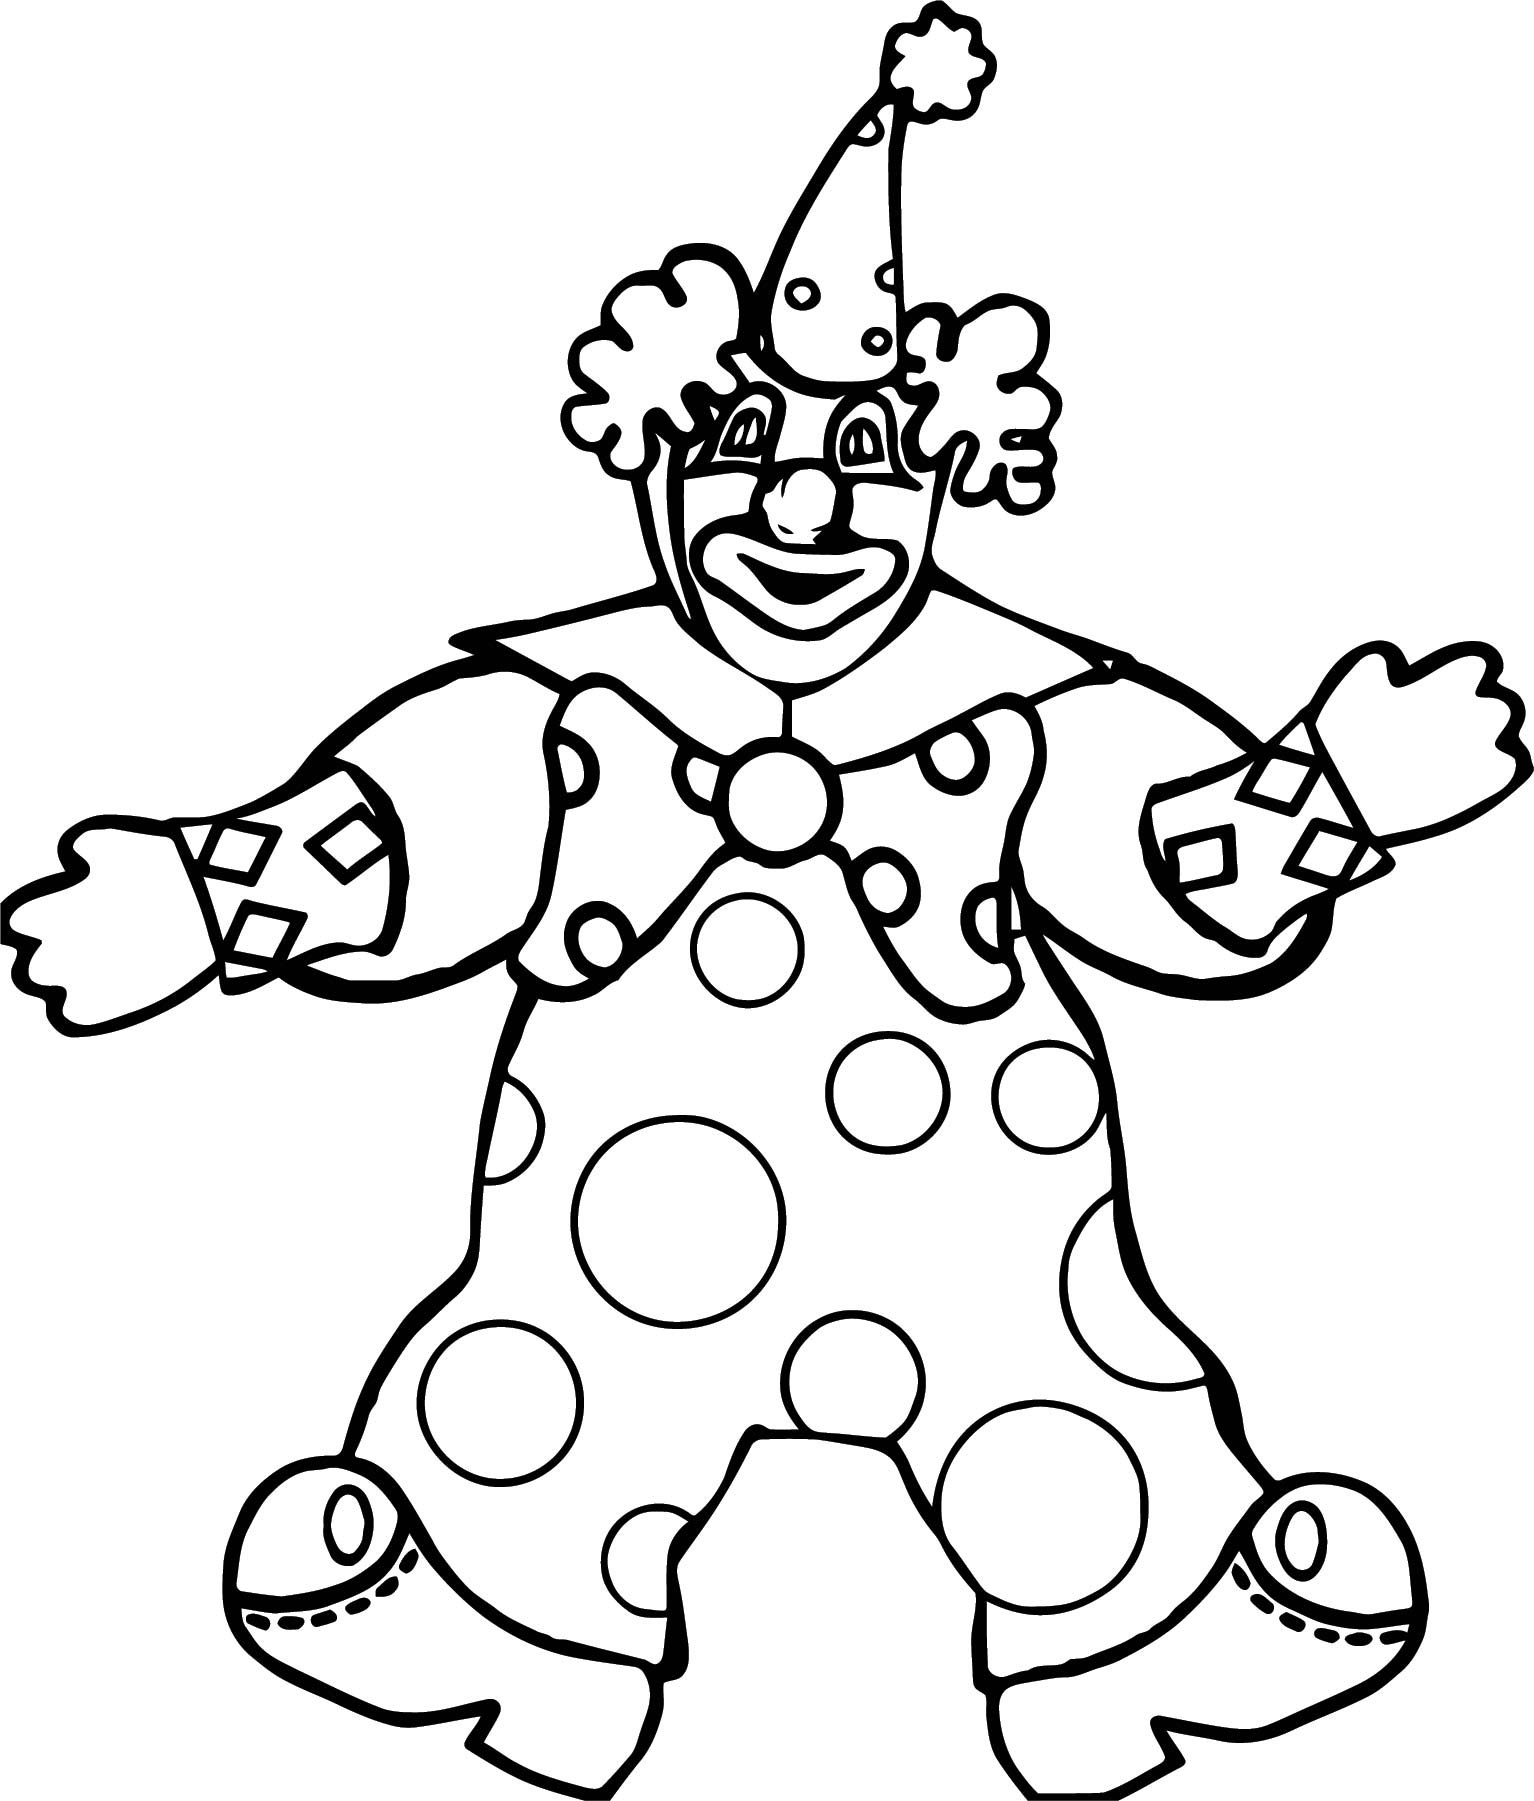 Клоун раскраска для детей 4 5 лет. Клоун раскраска. Клоун раскраска для детей. Раскраска весёлый клоун для детей. Клоун для раскрашивания детям.